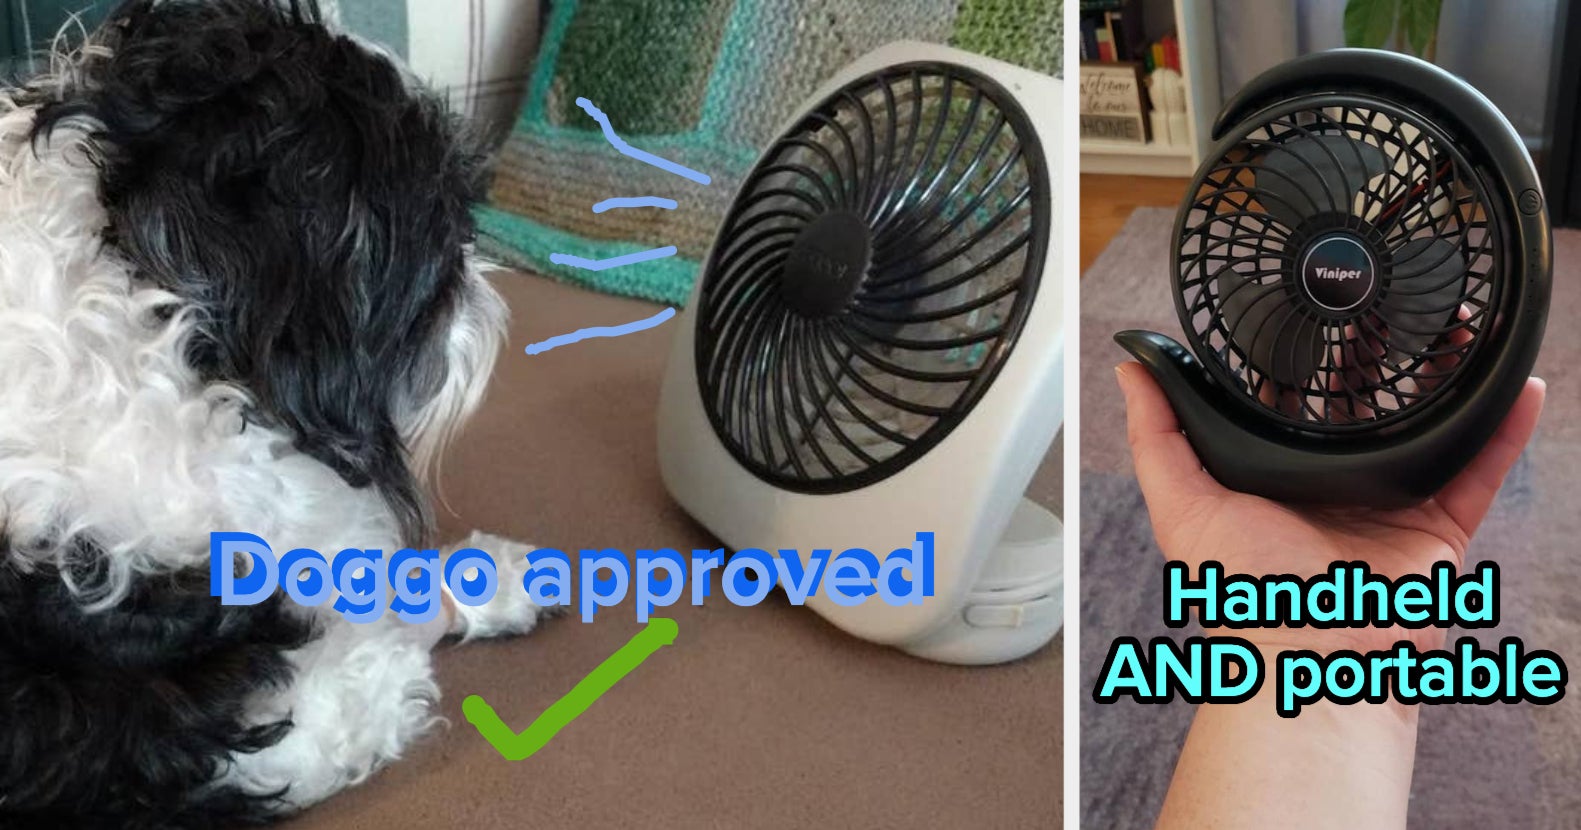 Neck Cooler with adjustable fans – OMG Japan